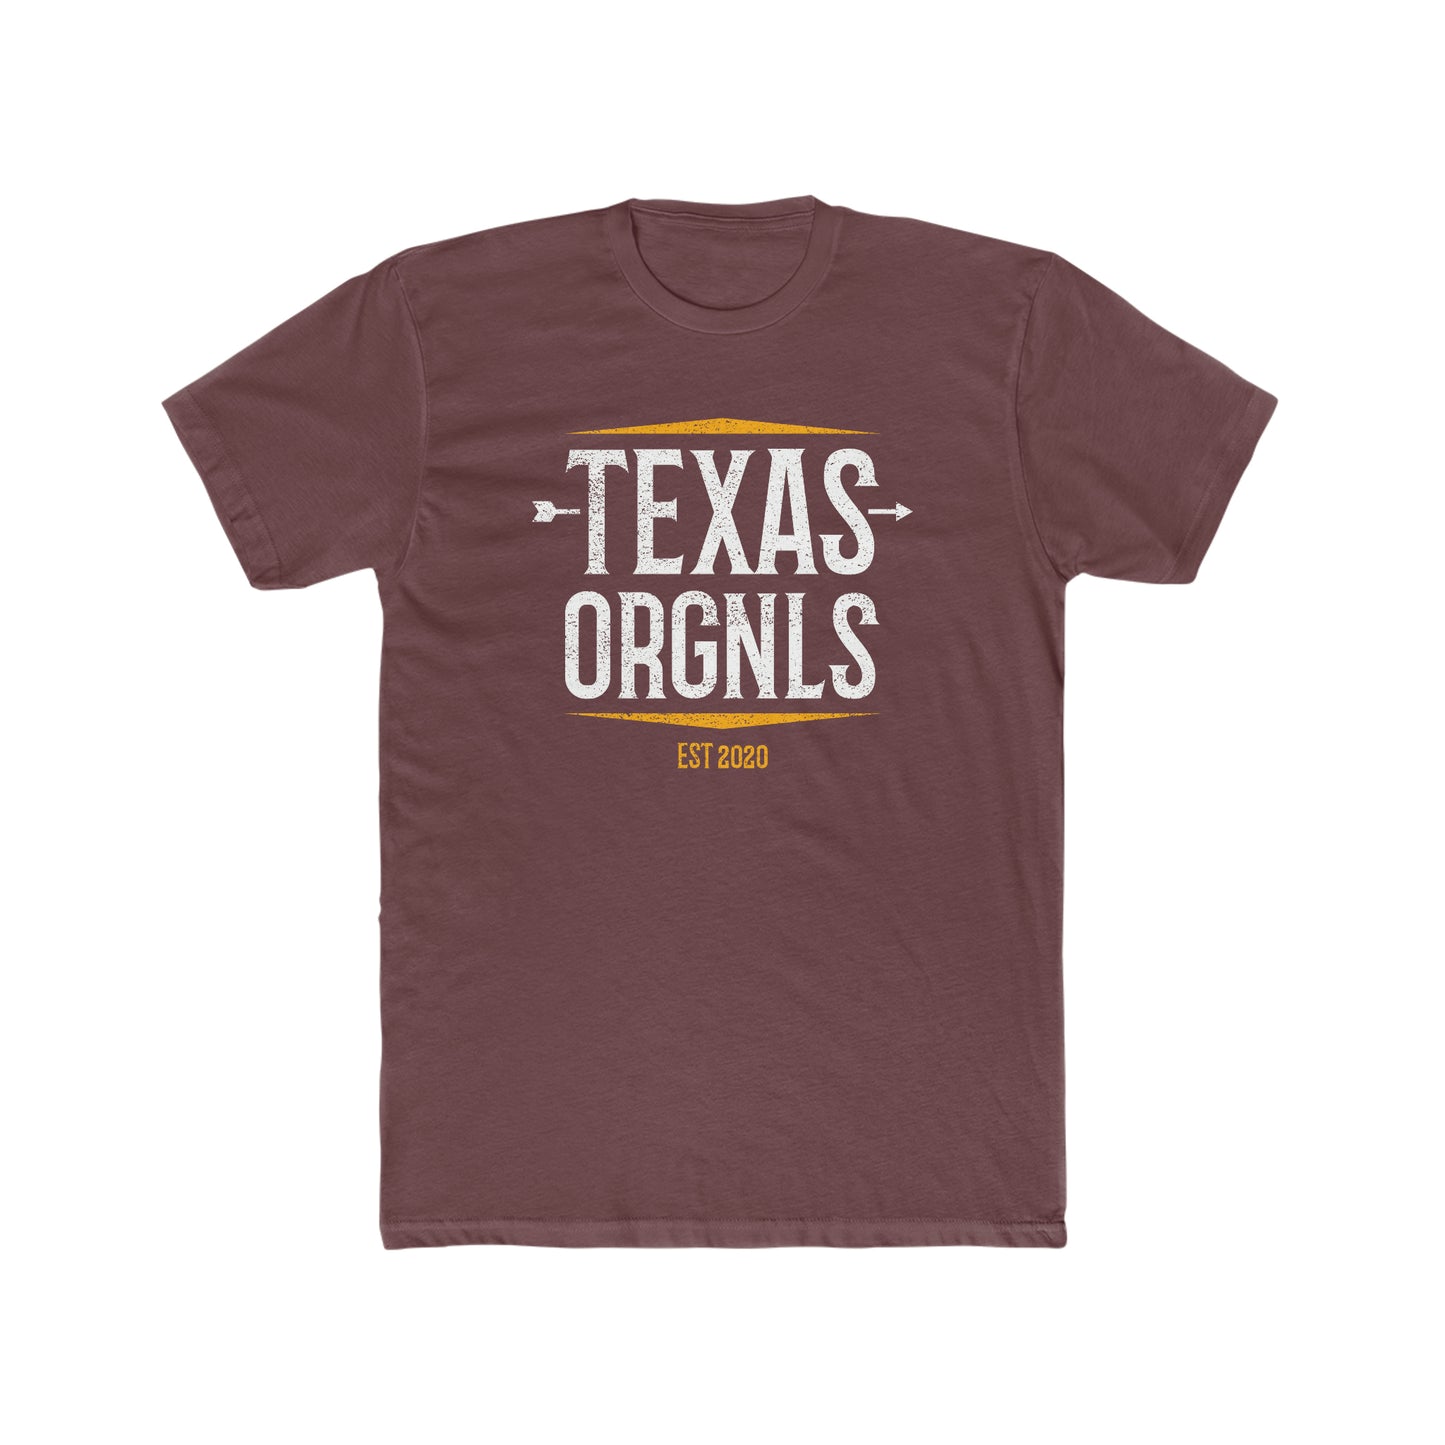 Unisex Texas Orgnls “Arrow” Tee